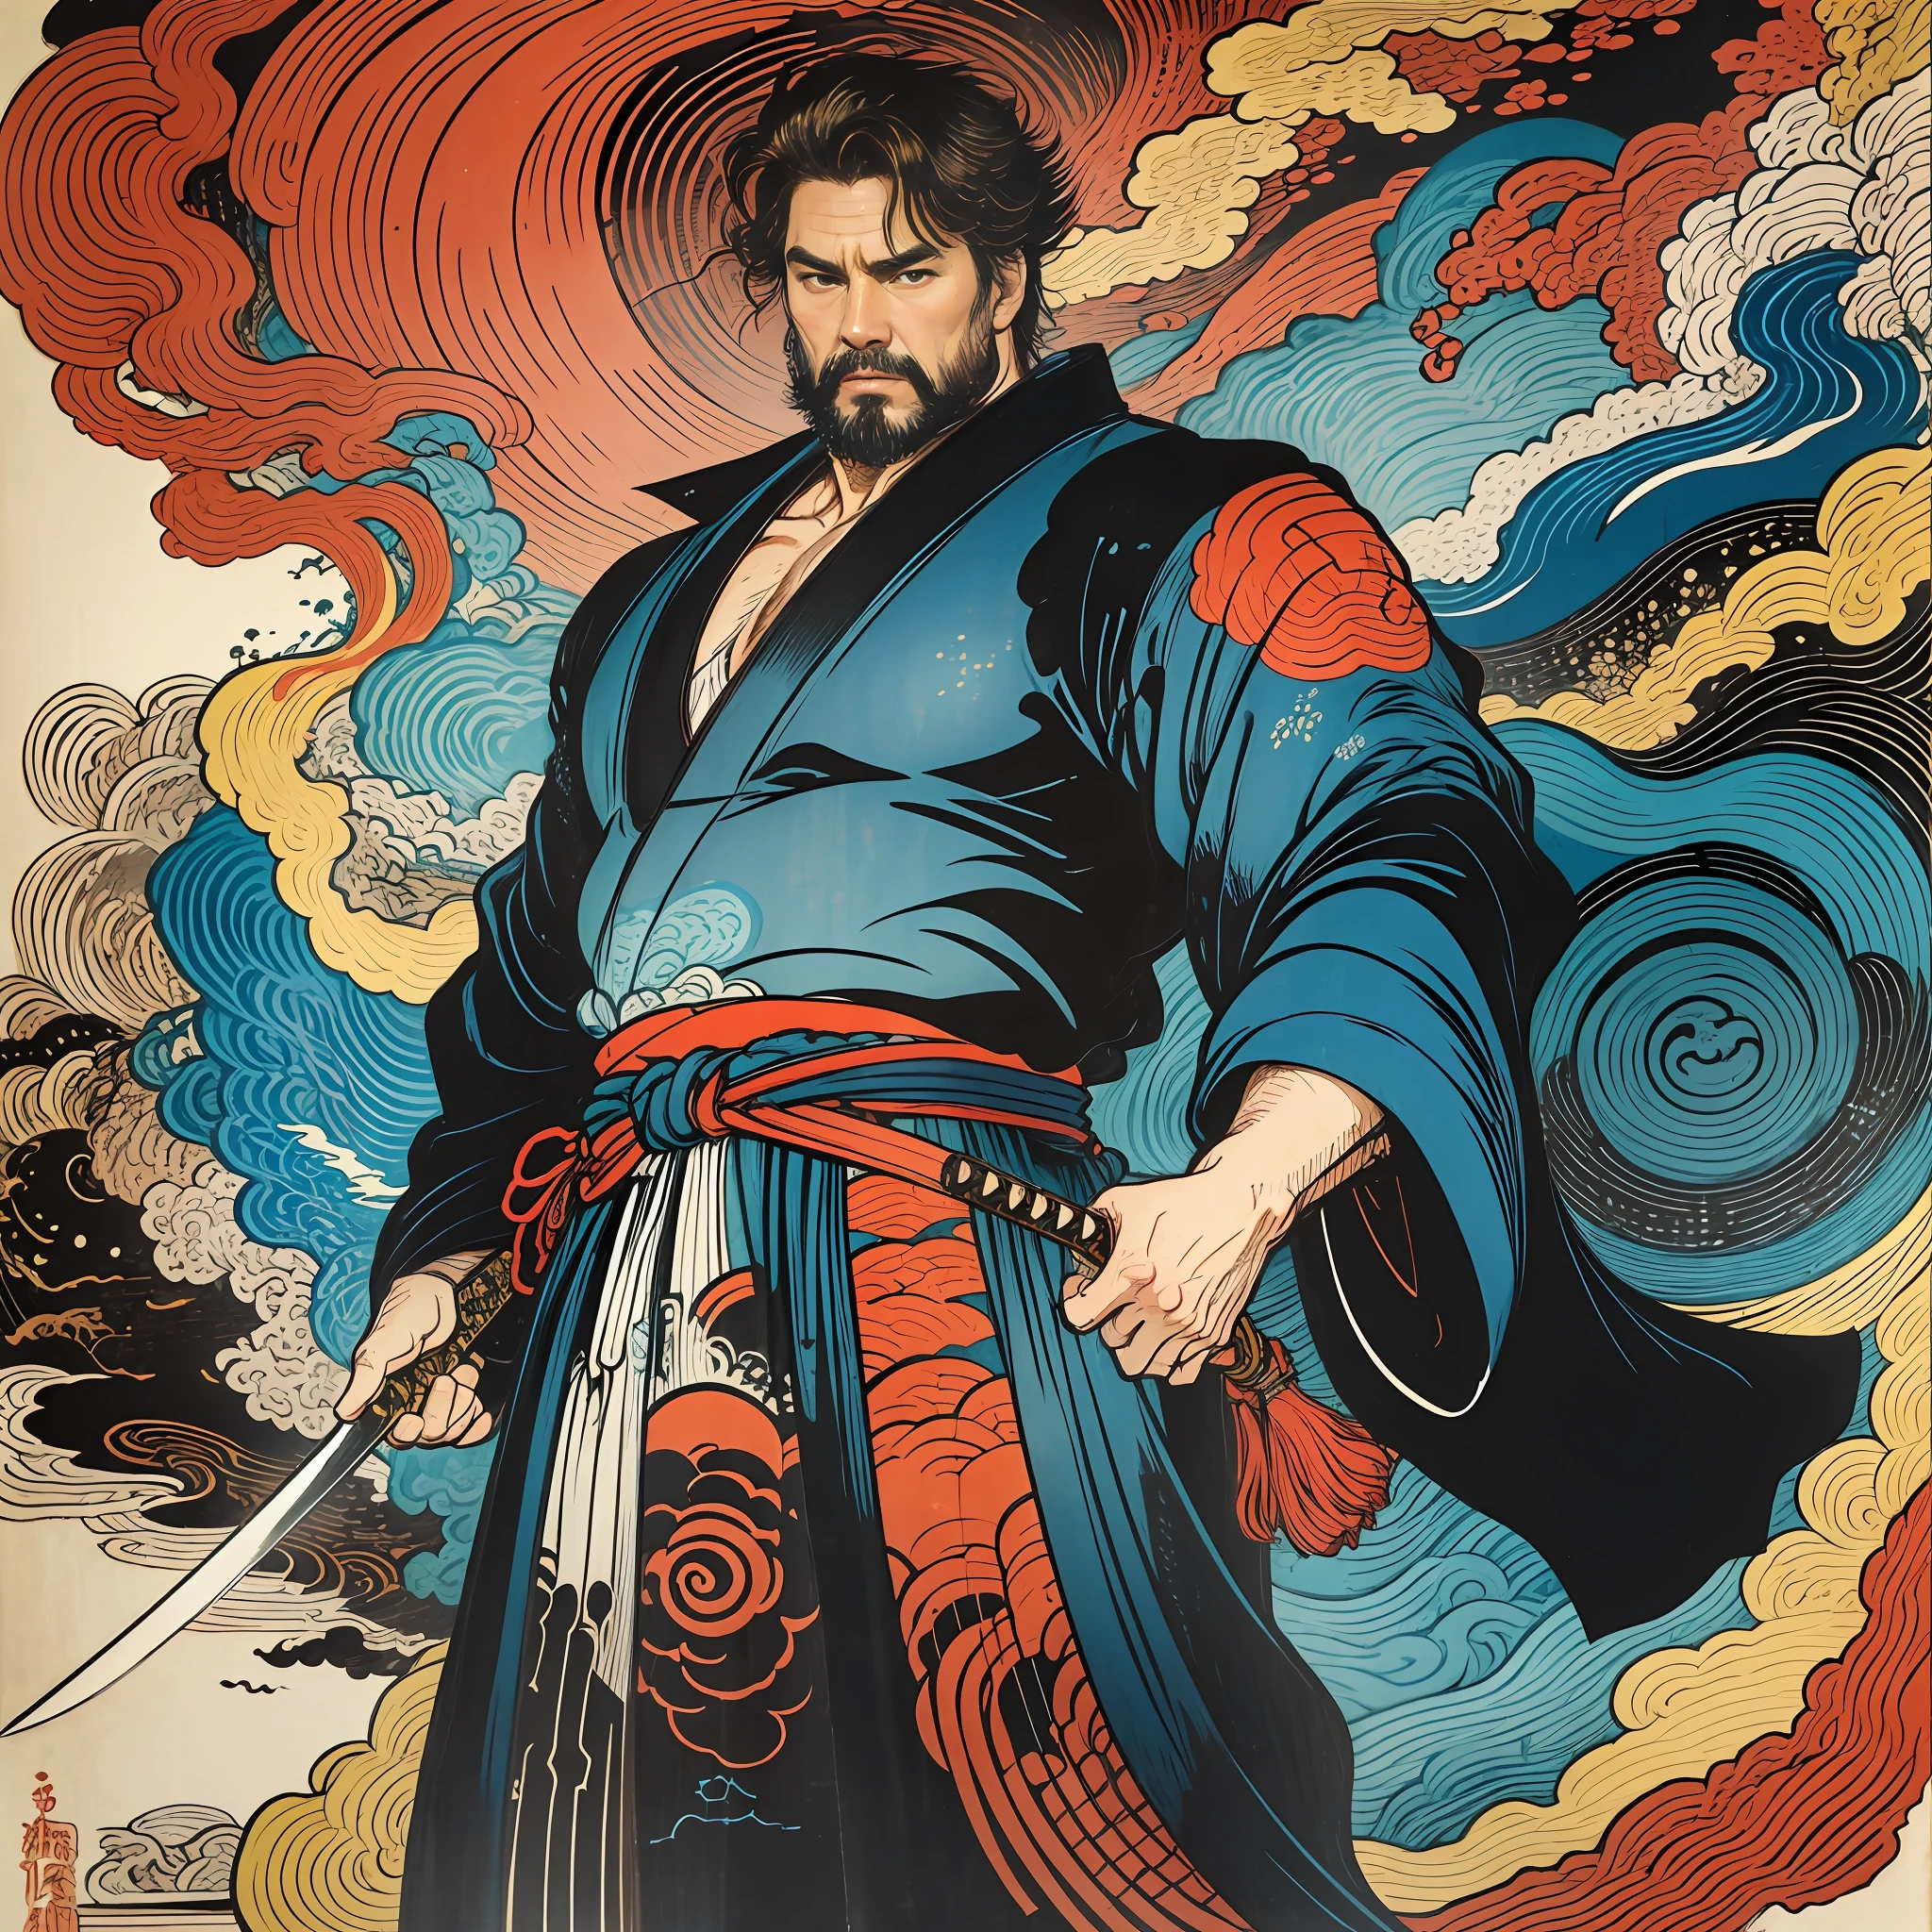 É uma pintura de corpo inteiro com cores naturais com desenhos de linhas no estilo Katsushika Hokusai.. O espadachim Tom Cruise tem um grande corpo como um homem forte. Samurais do Japão. Com uma expressão digna, mas viril, de determinação, ele enfrenta espíritos malignos. Ele tem cabelo curto preto e um curto, barba aparada. Sua parte superior do corpo é coberta com um quimono preto jato com uma textura brilhante, e seu hakama é de joelhos. Na mão direita ele segura uma espada japonesa com uma parte de espada mais longa. na mais alta qualidade, obra-prima de alta resolução estilo ukiyo-e relâmpago e chamas giratórias. entre eles, Tom Cruise está de costas retas, De frente.